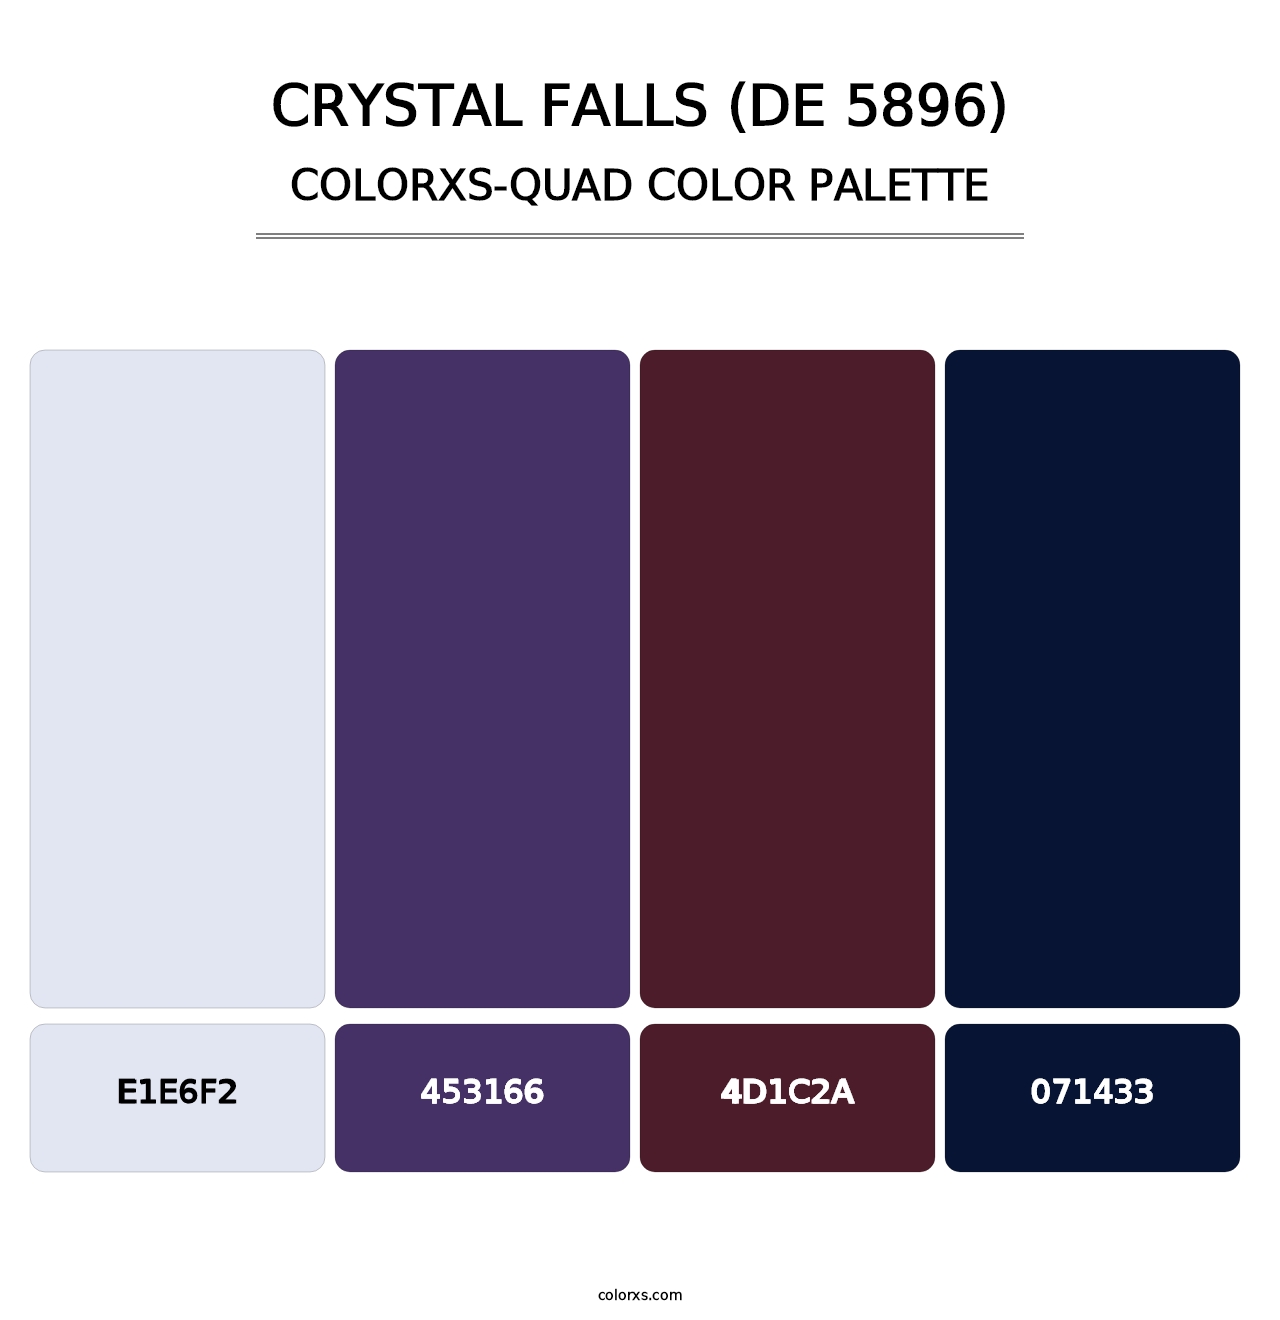 Crystal Falls (DE 5896) - Colorxs Quad Palette